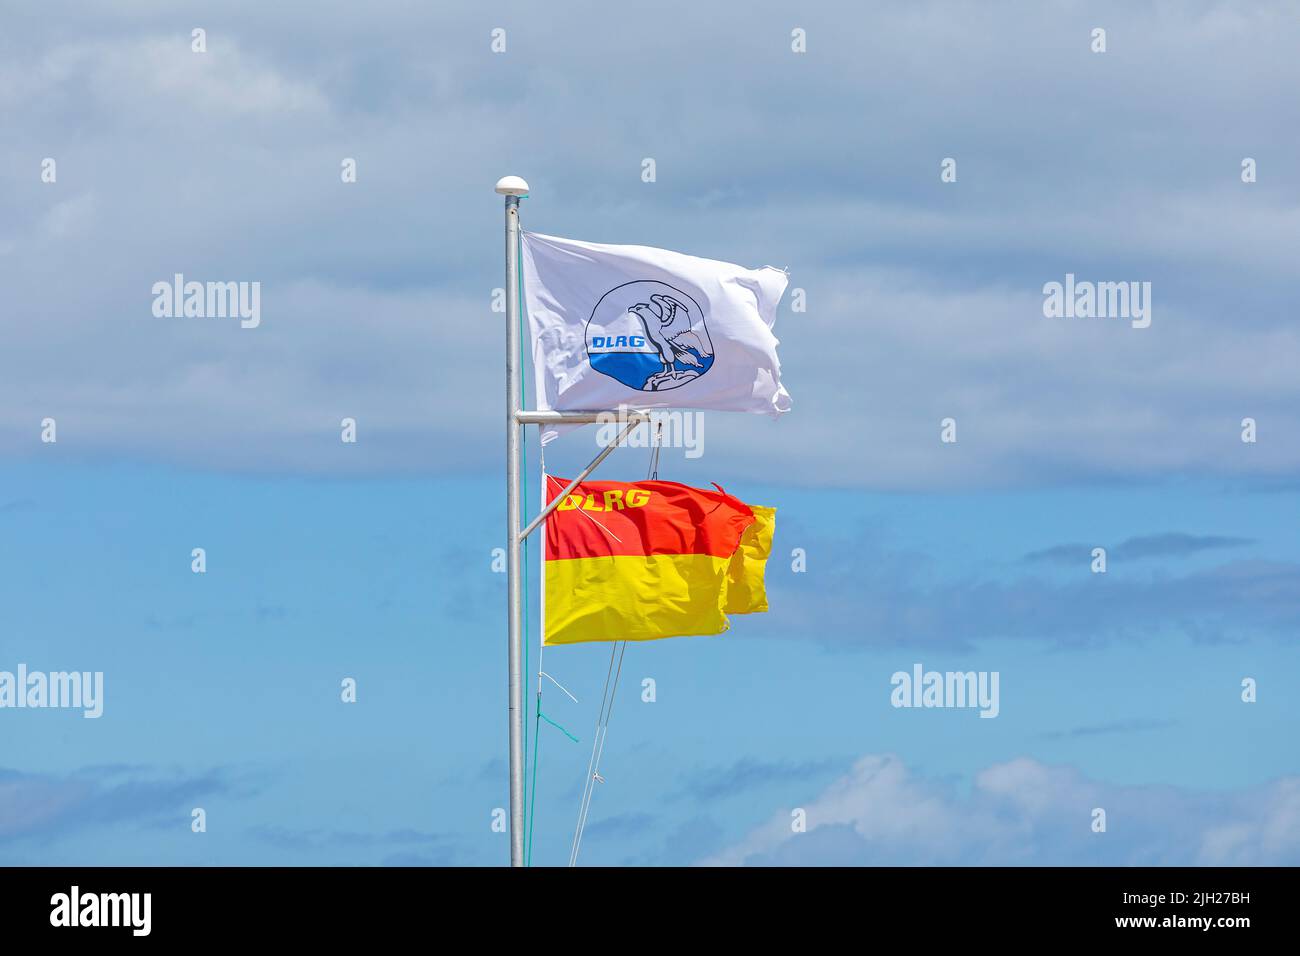 DLRG Flags, Steinwarder Peninsula, Heiligenhafen, Schleswig-Holstein, Germany Stock Photo